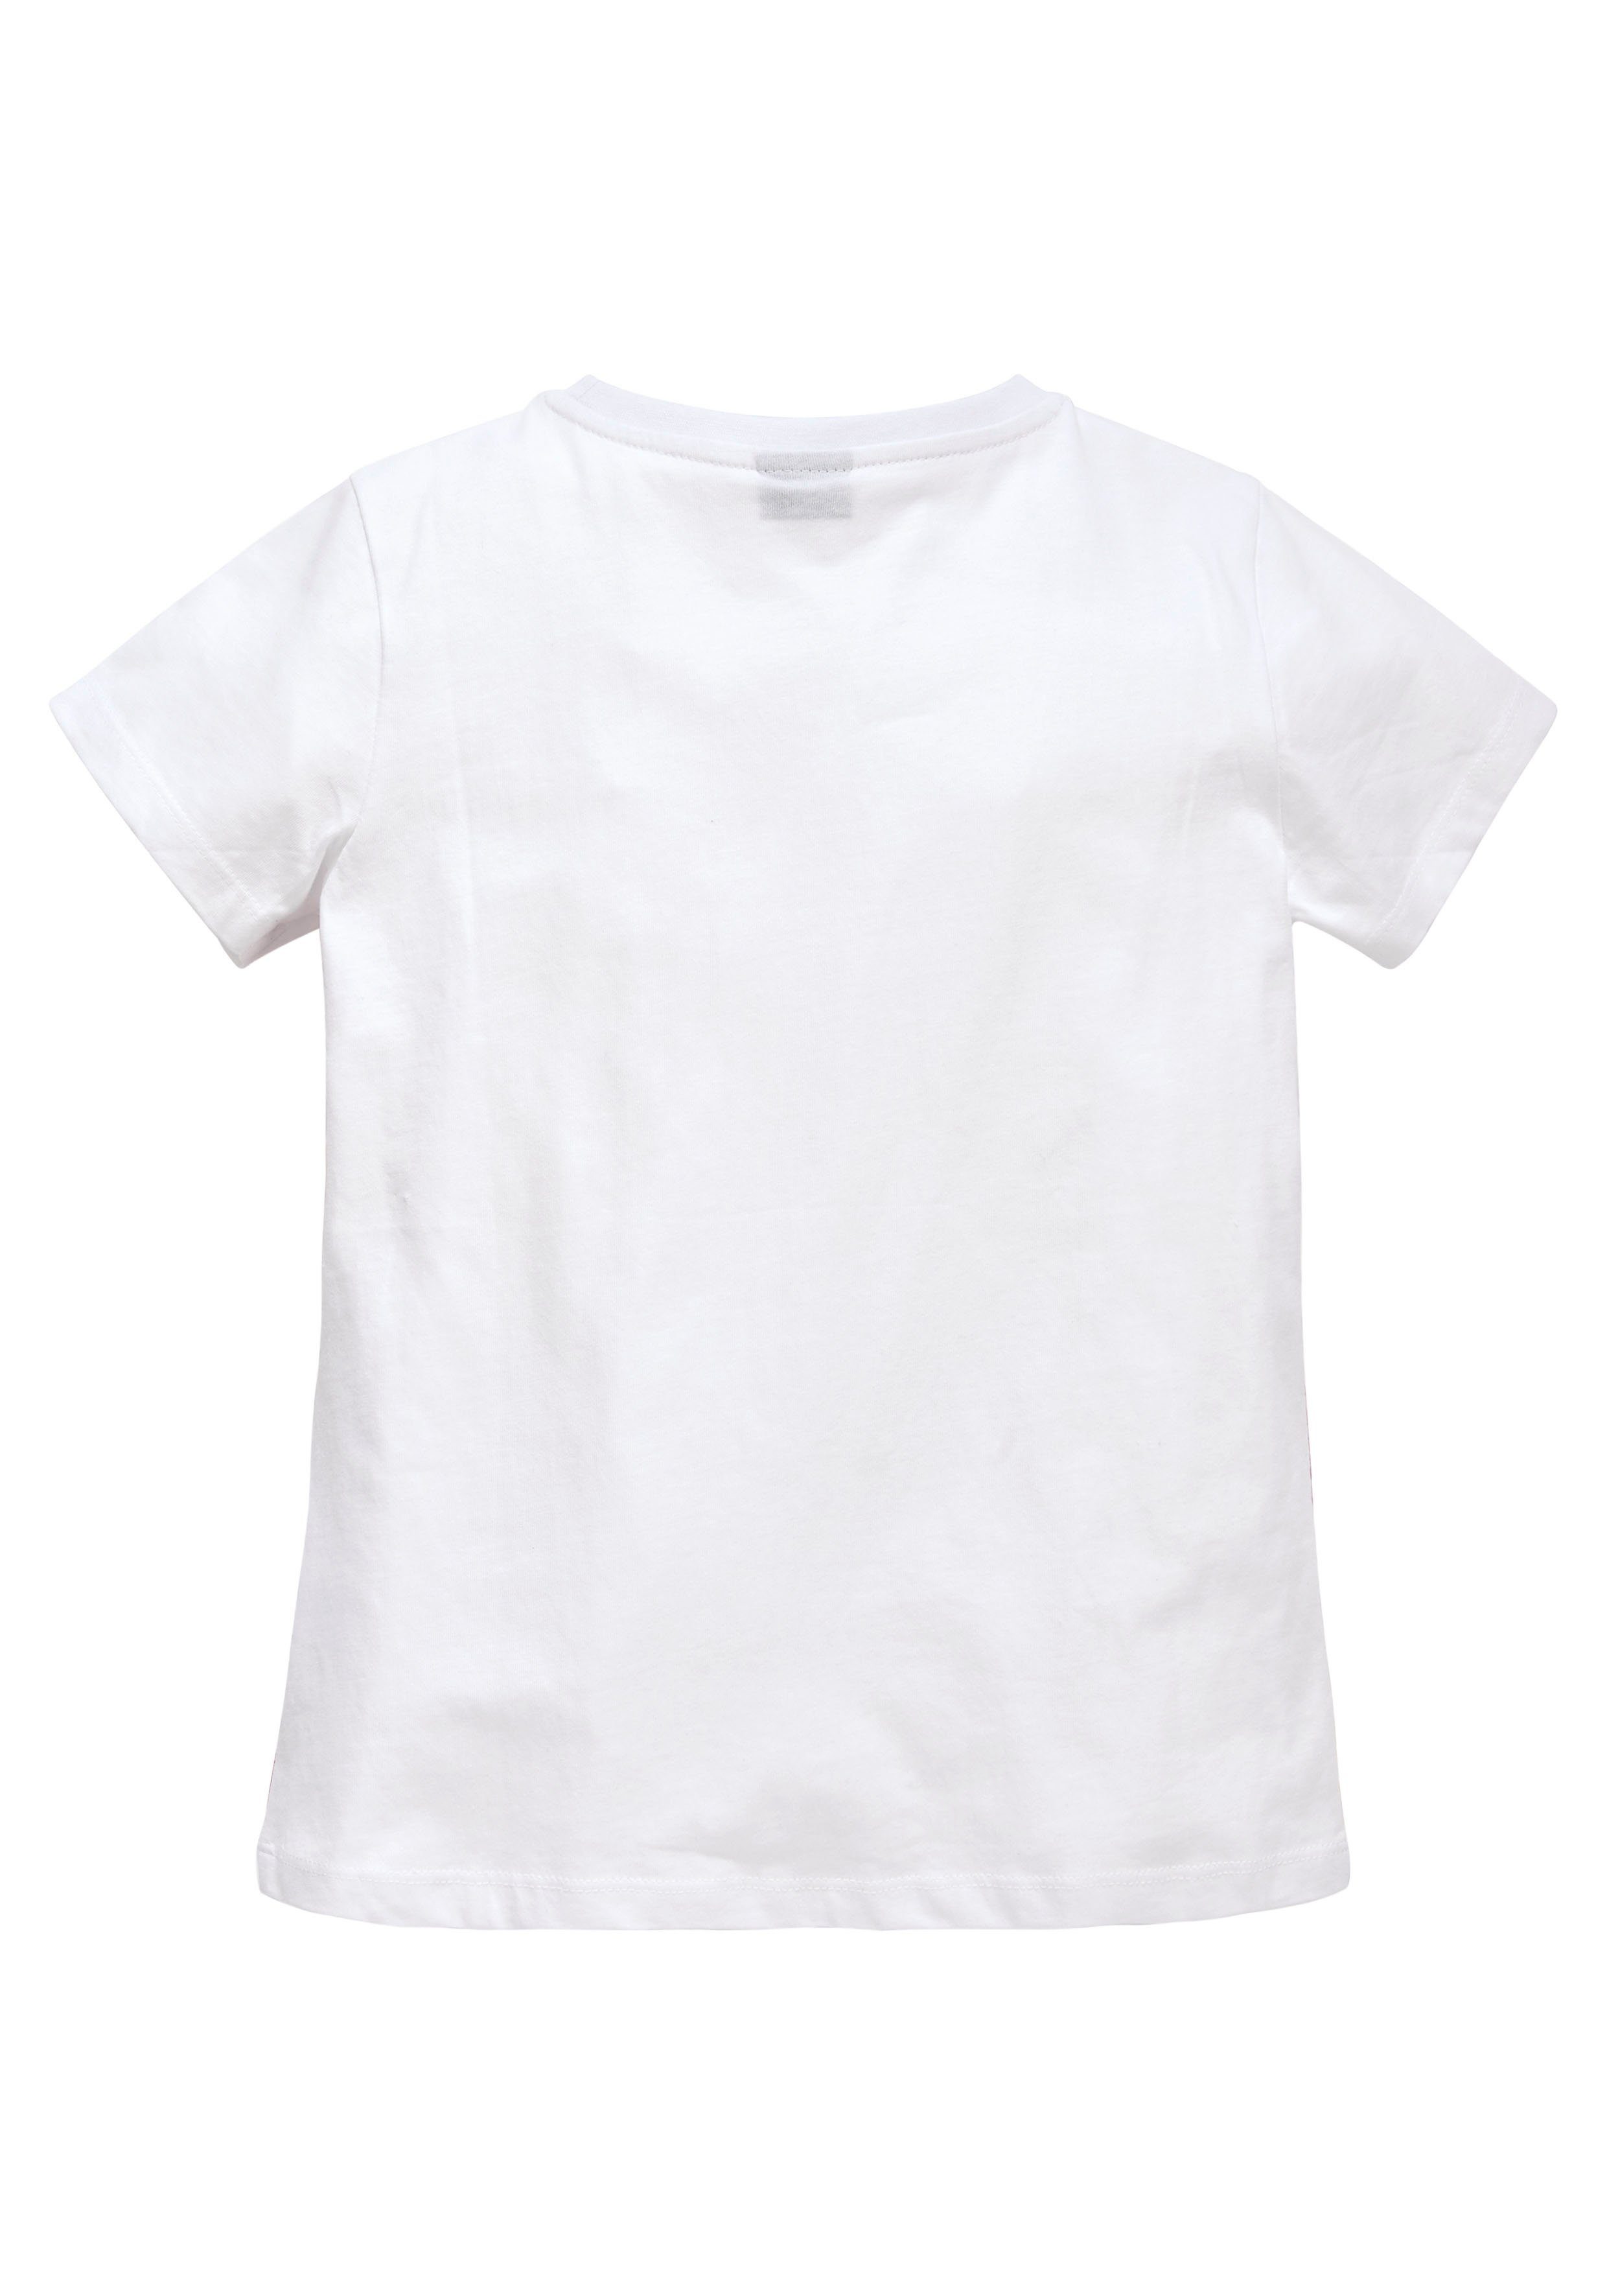 KIDSWORLD T-Shirt Form in taillierter leicht